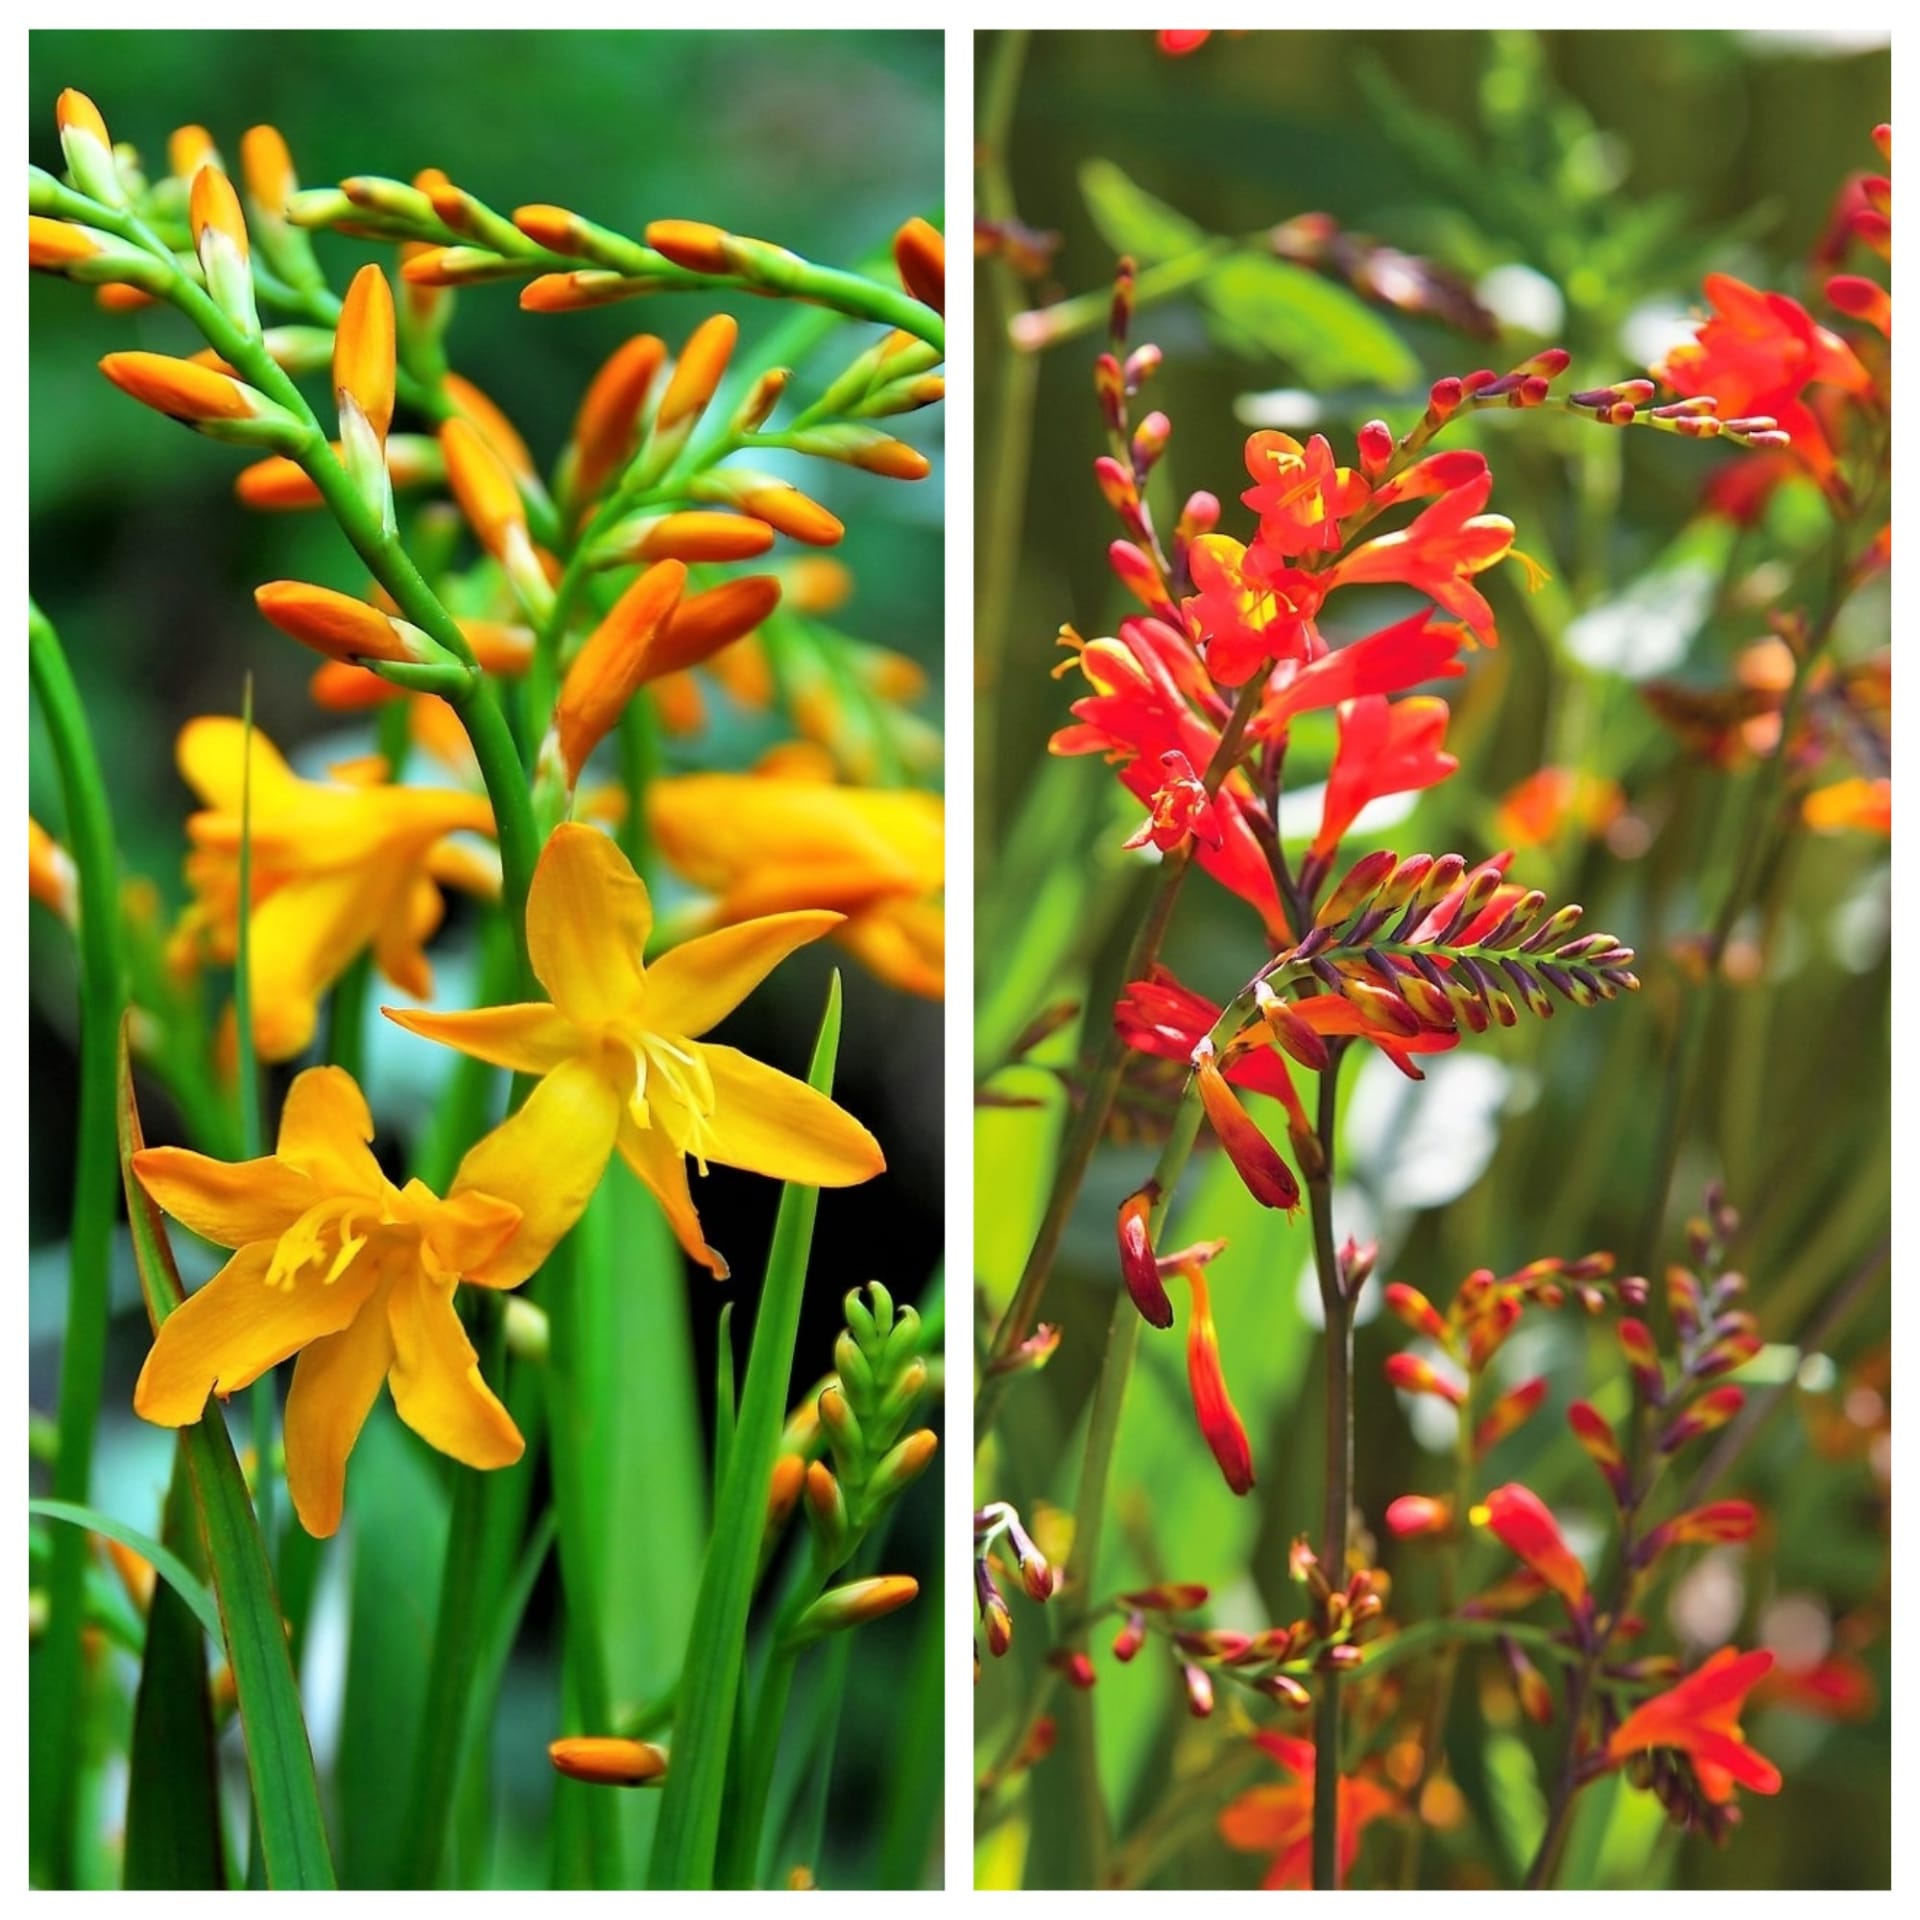 Montbrecie (Crocosmia) pocházejí z Jižní Afriky, do Evropy se dostaly až kolem roku 1900. Původně byly tyhle hlíznaté rostliny pouze oranžové, dnes si můžete vybrat kultivary a hybridy s květy v celé škále teplých barev od žlutooranžové po šarlatově červenou. 